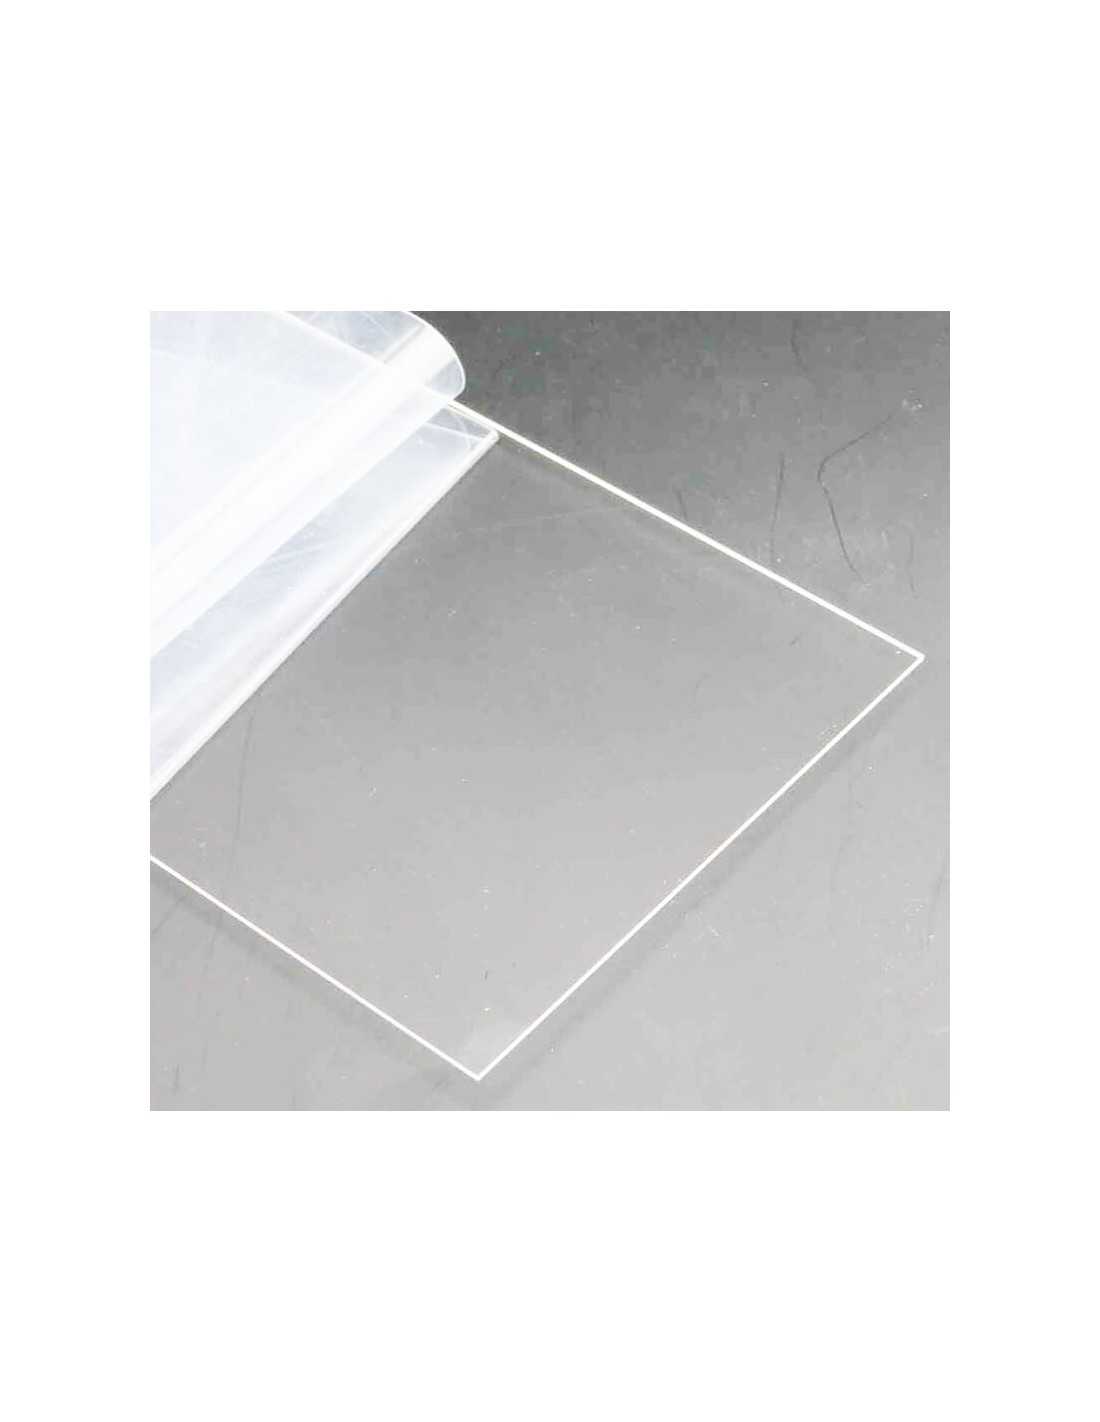 Placa Metacrilato transparente 5 mm - Tamaño 100 x 30 cm - Plancha